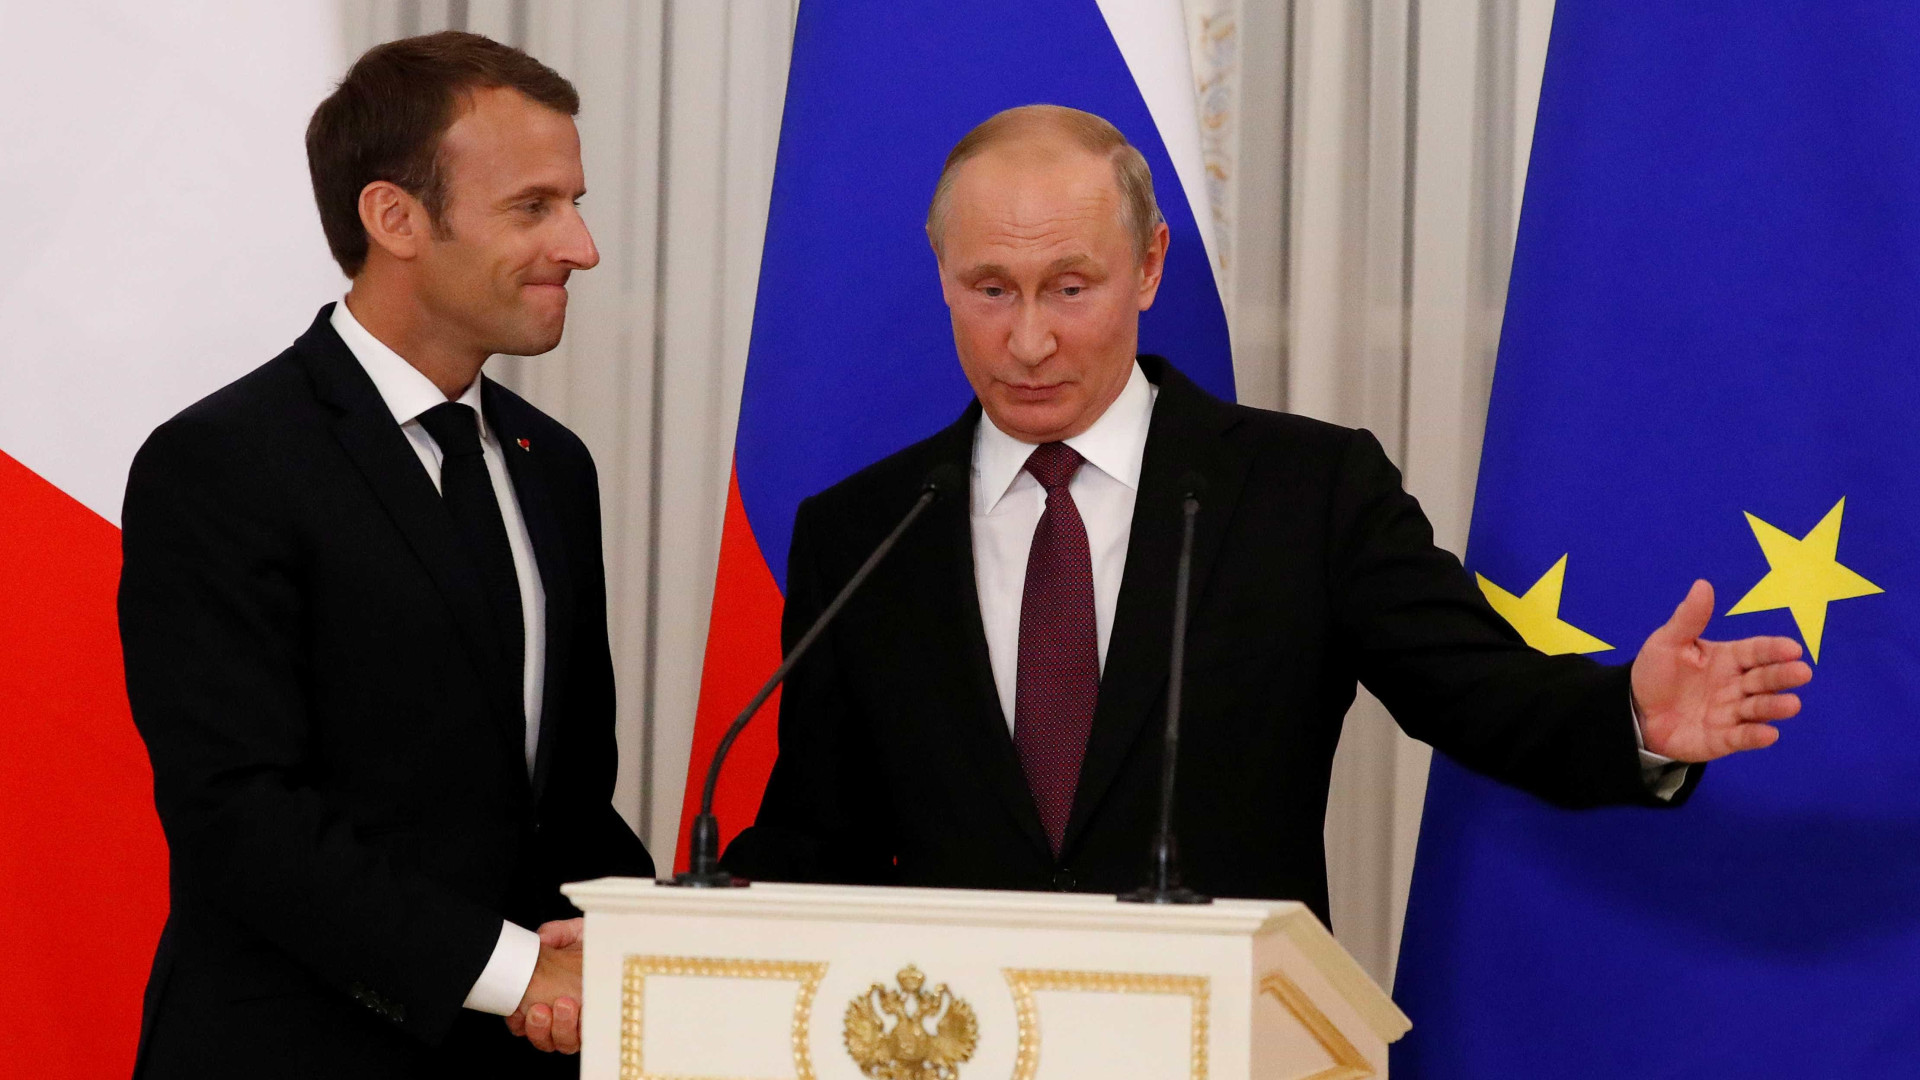 Putin recebe Macron e lamenta decisão de Trump sobre Kim